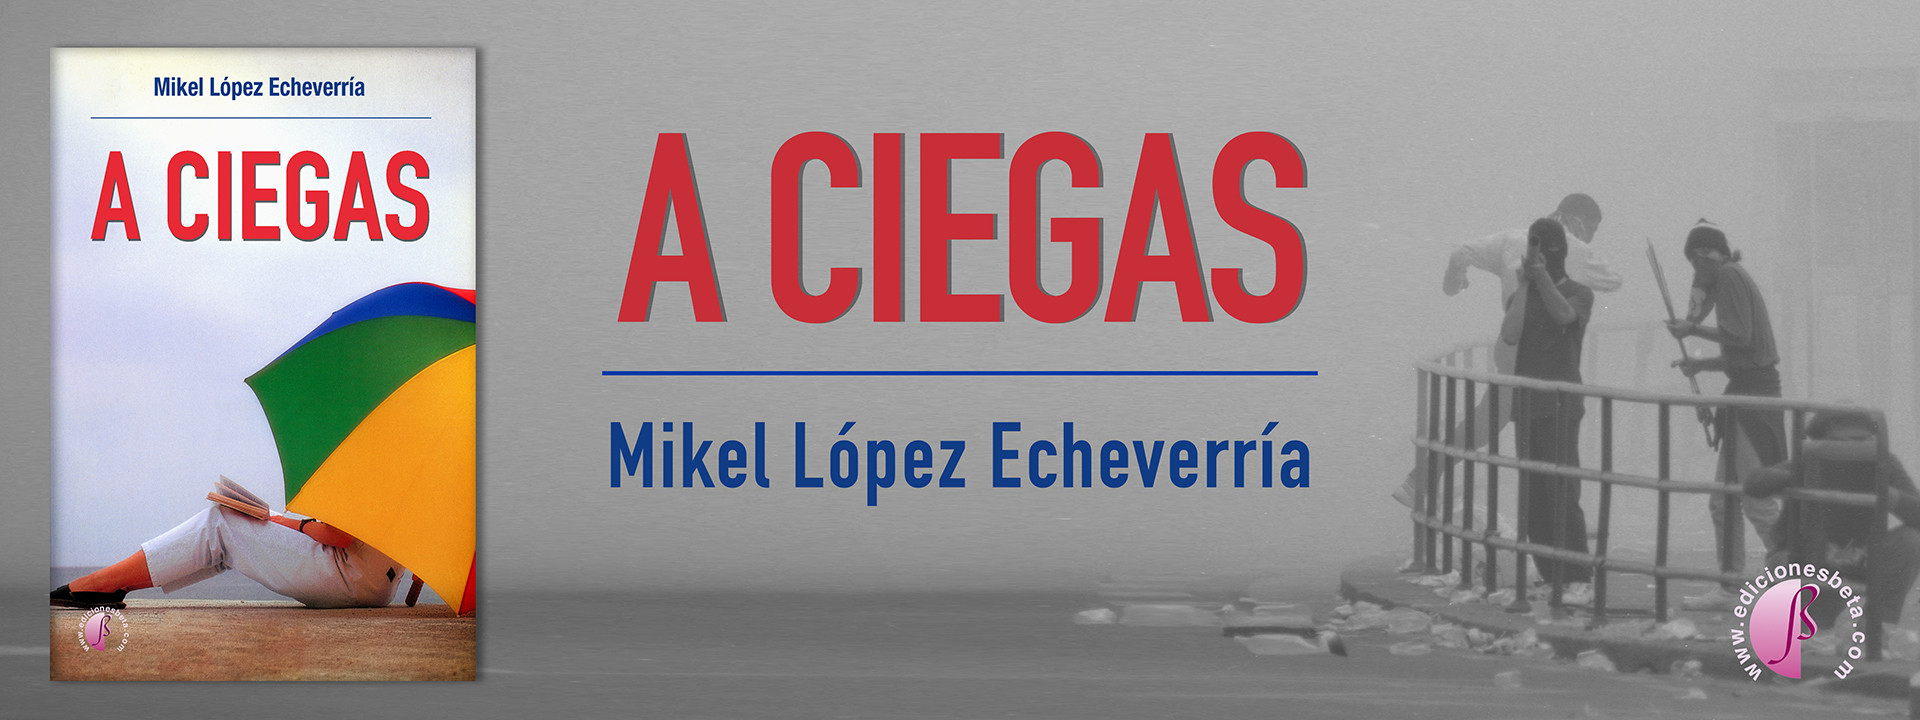 A ciegas - Mikel López Echeverría